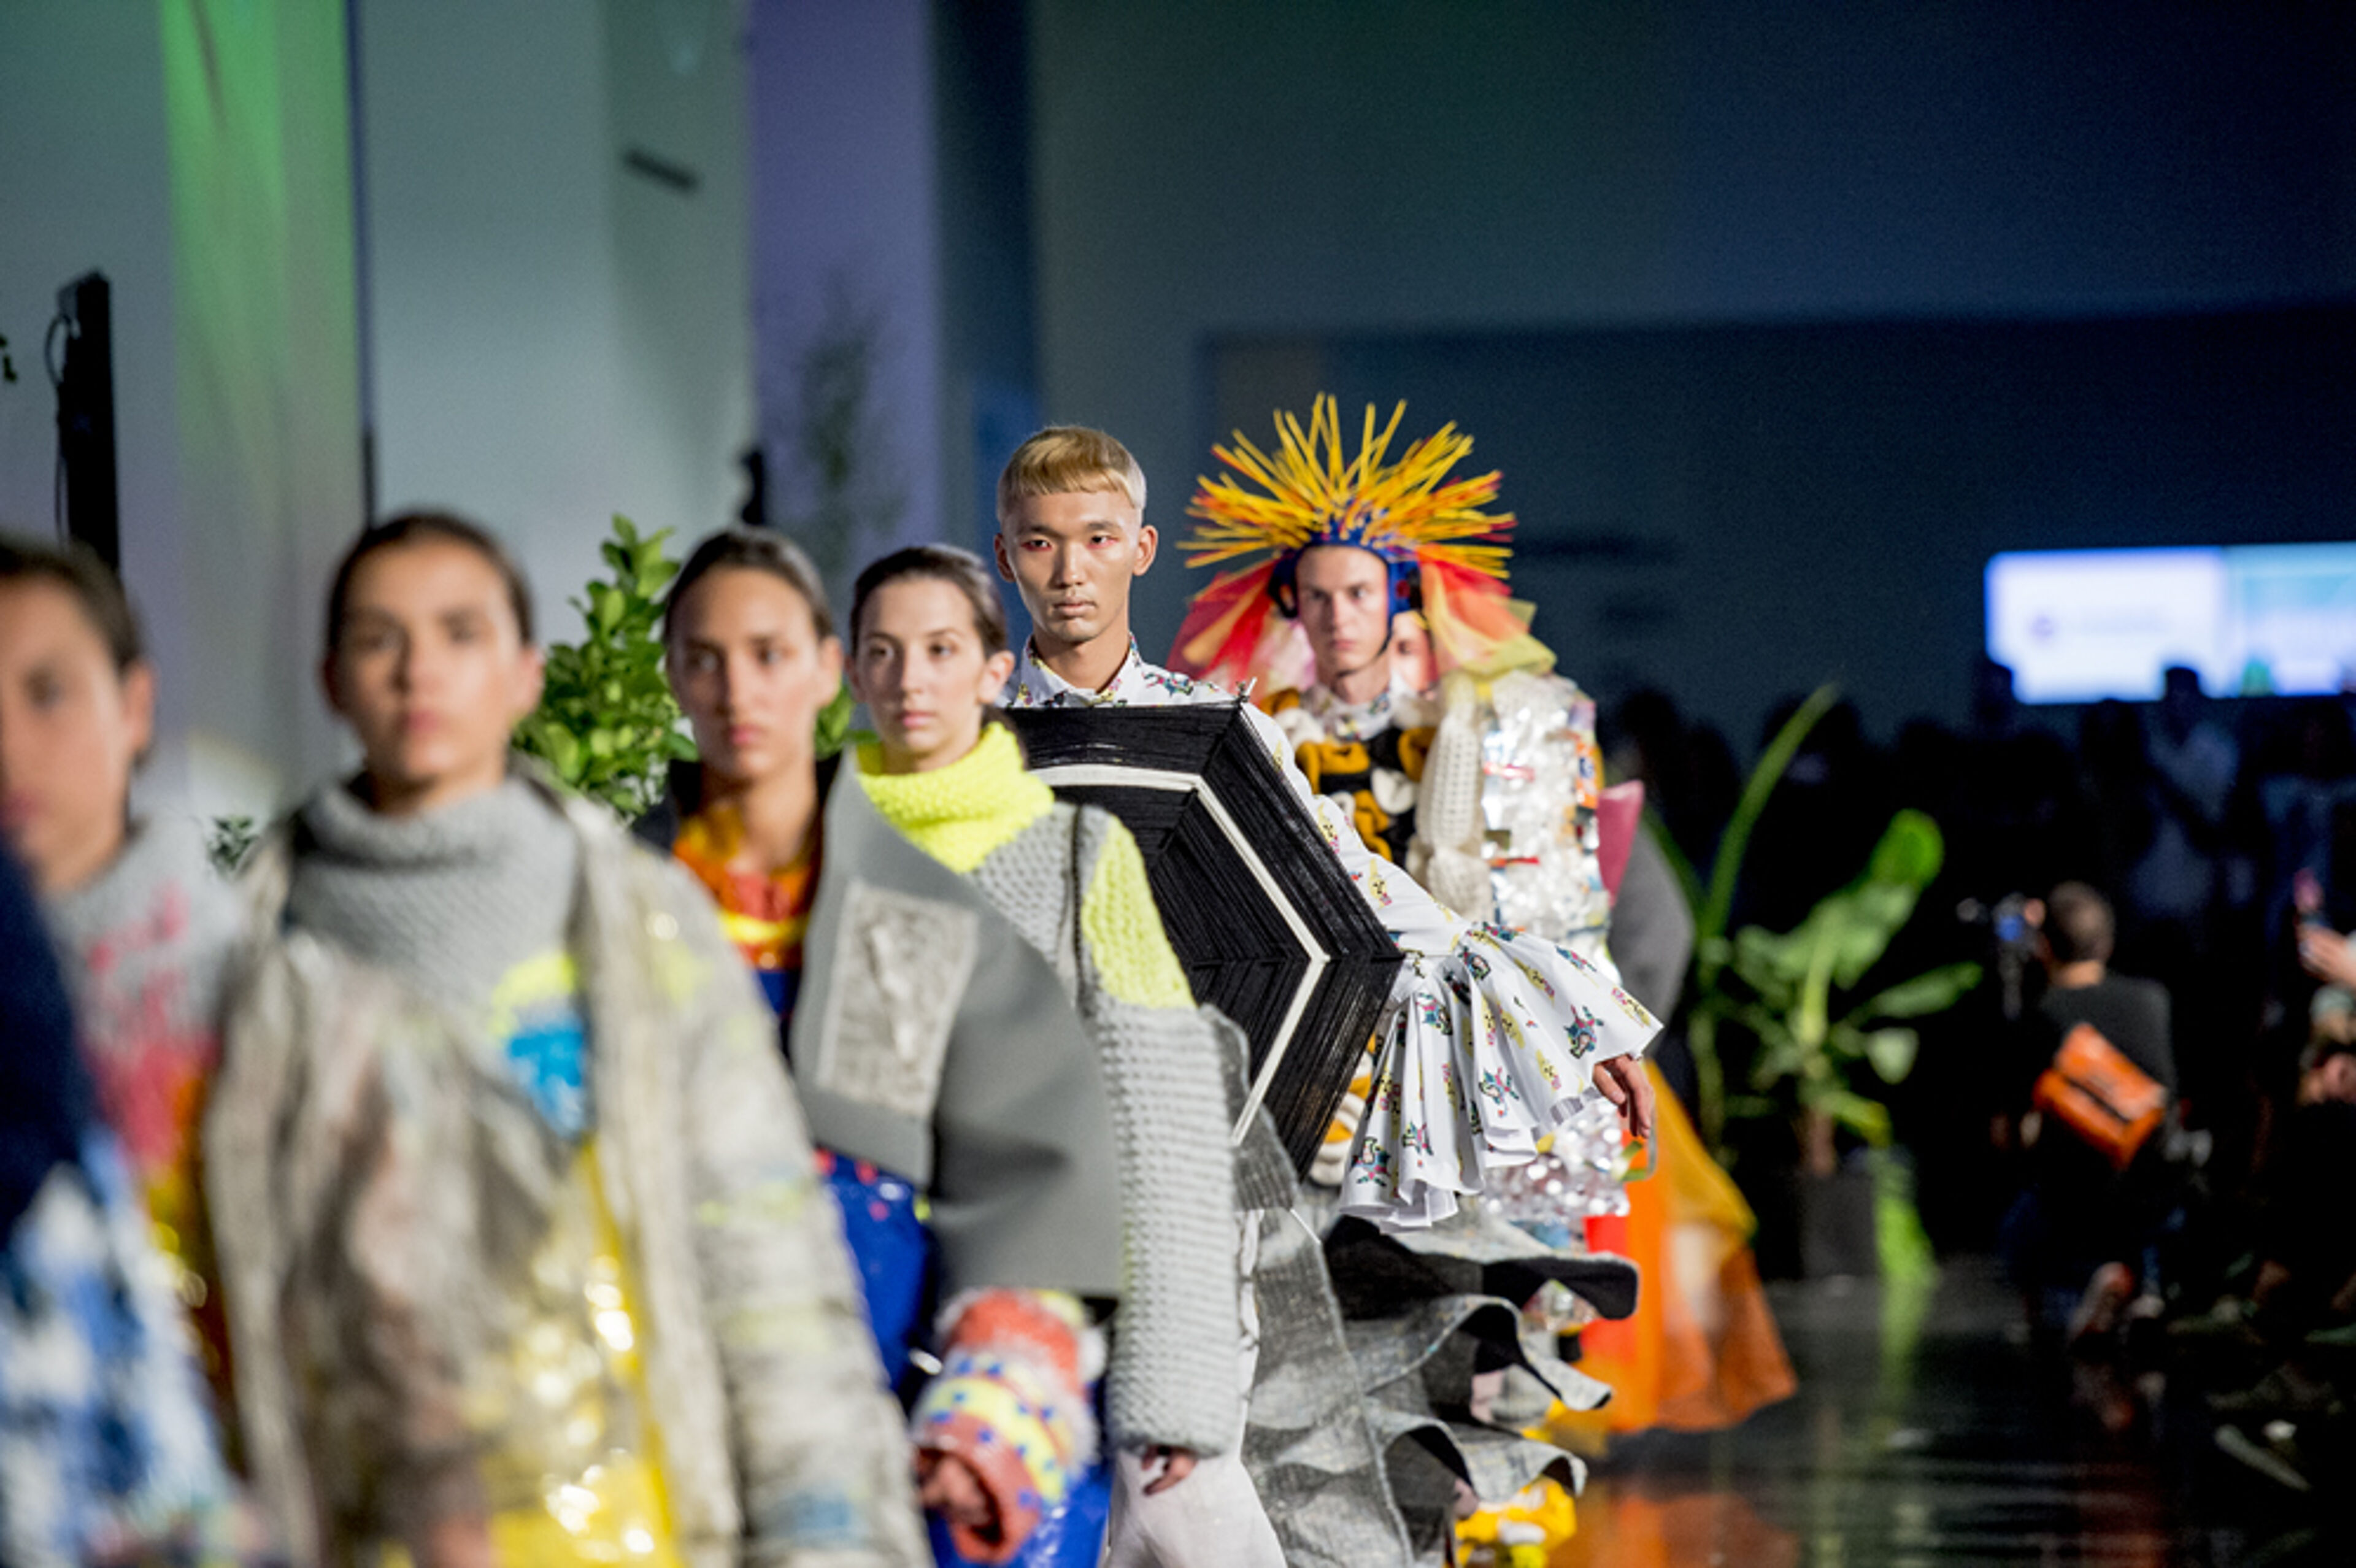 Models desfilen per la passarel·la amb vestits eclèctics i vibrants en un esdeveniment de moda contemporani, mostrant un disseny innovador i textures atrevides.